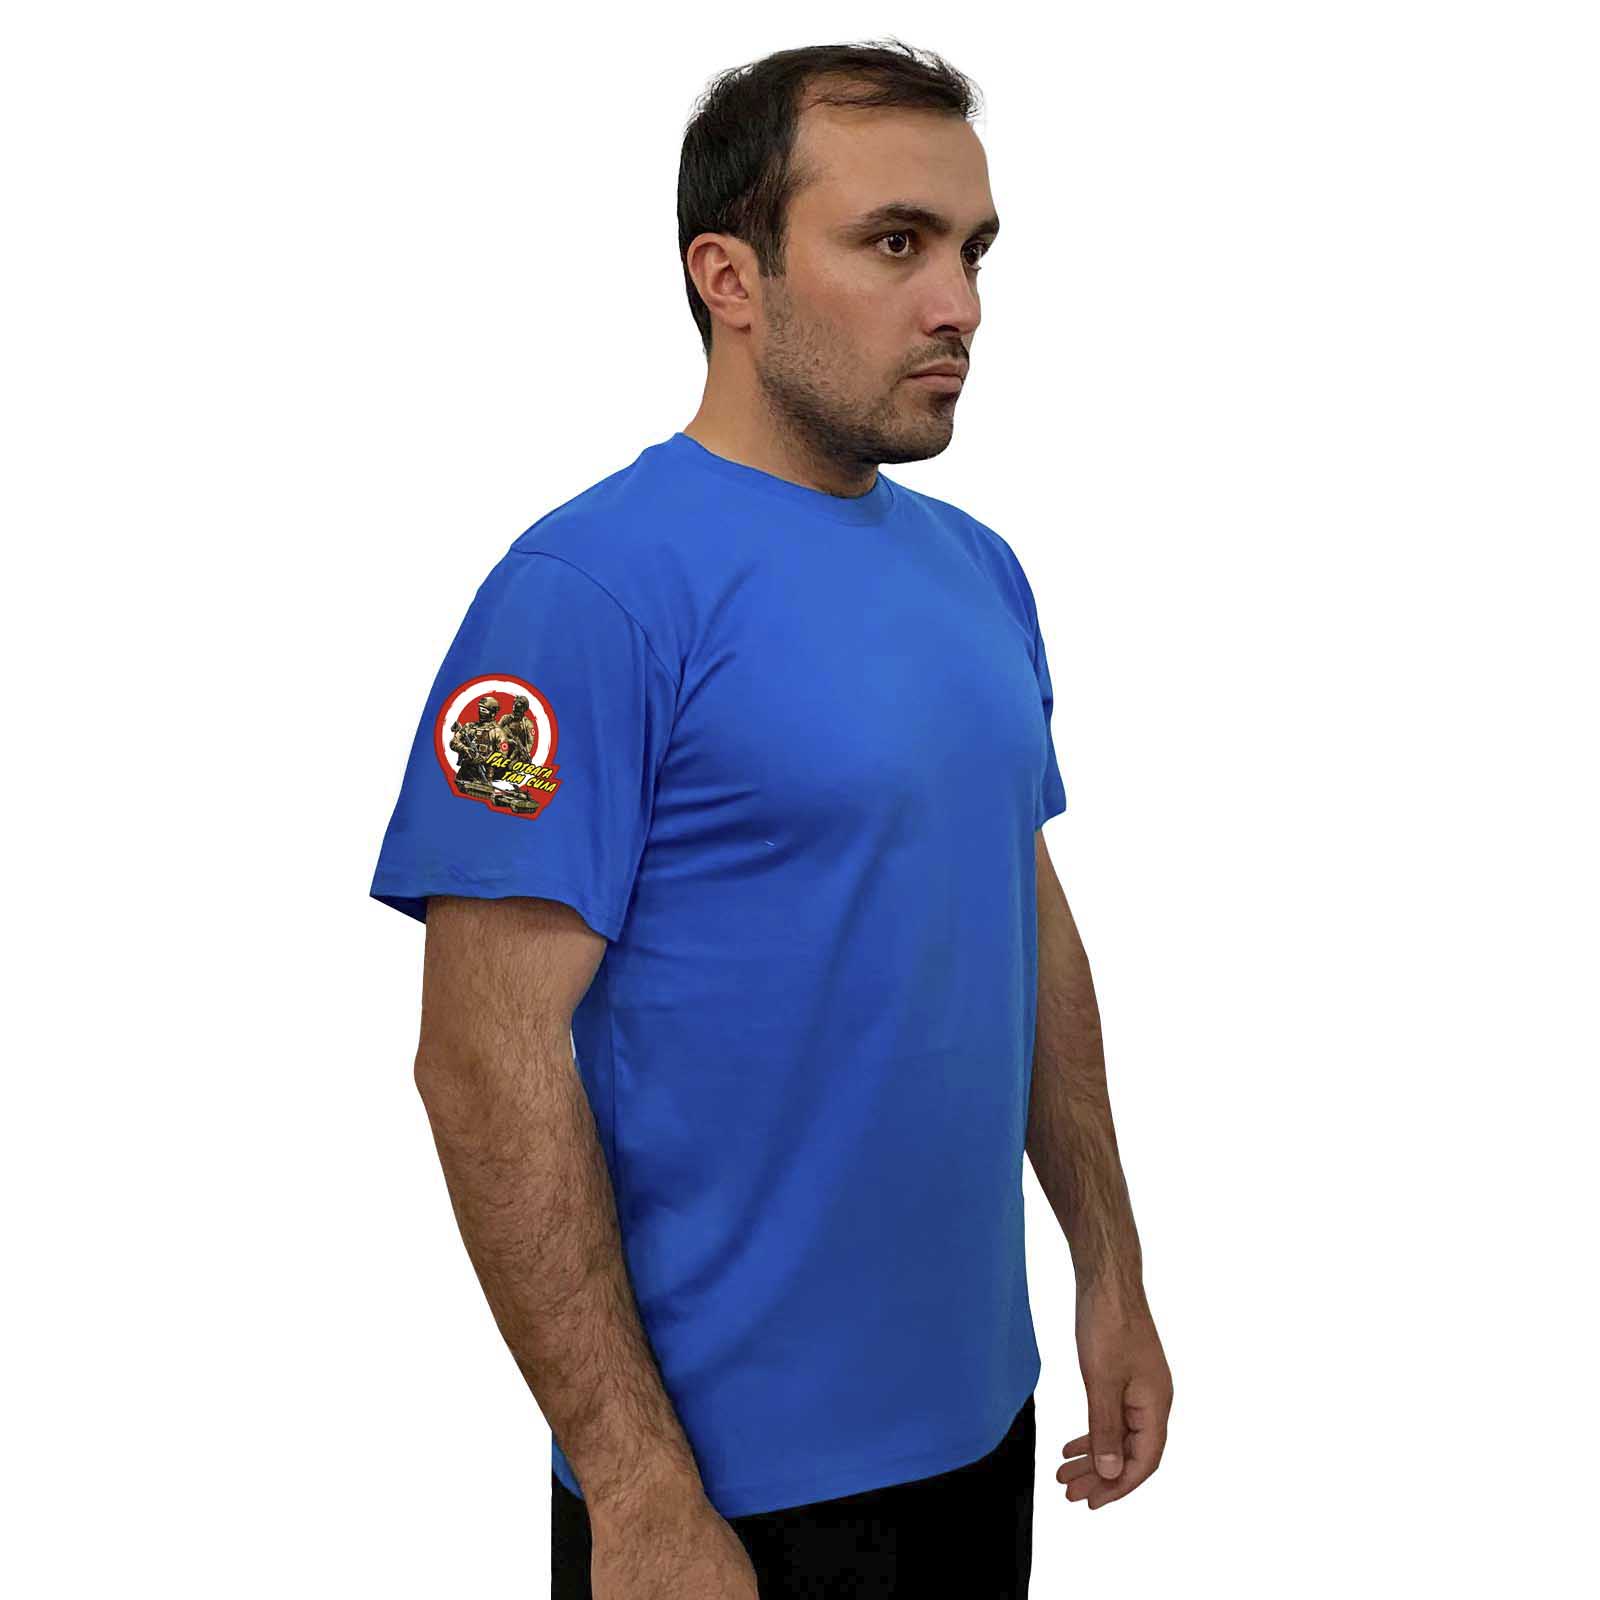 Васильковая футболка с термотрансфером "Где отвага, там сила" на рукаве